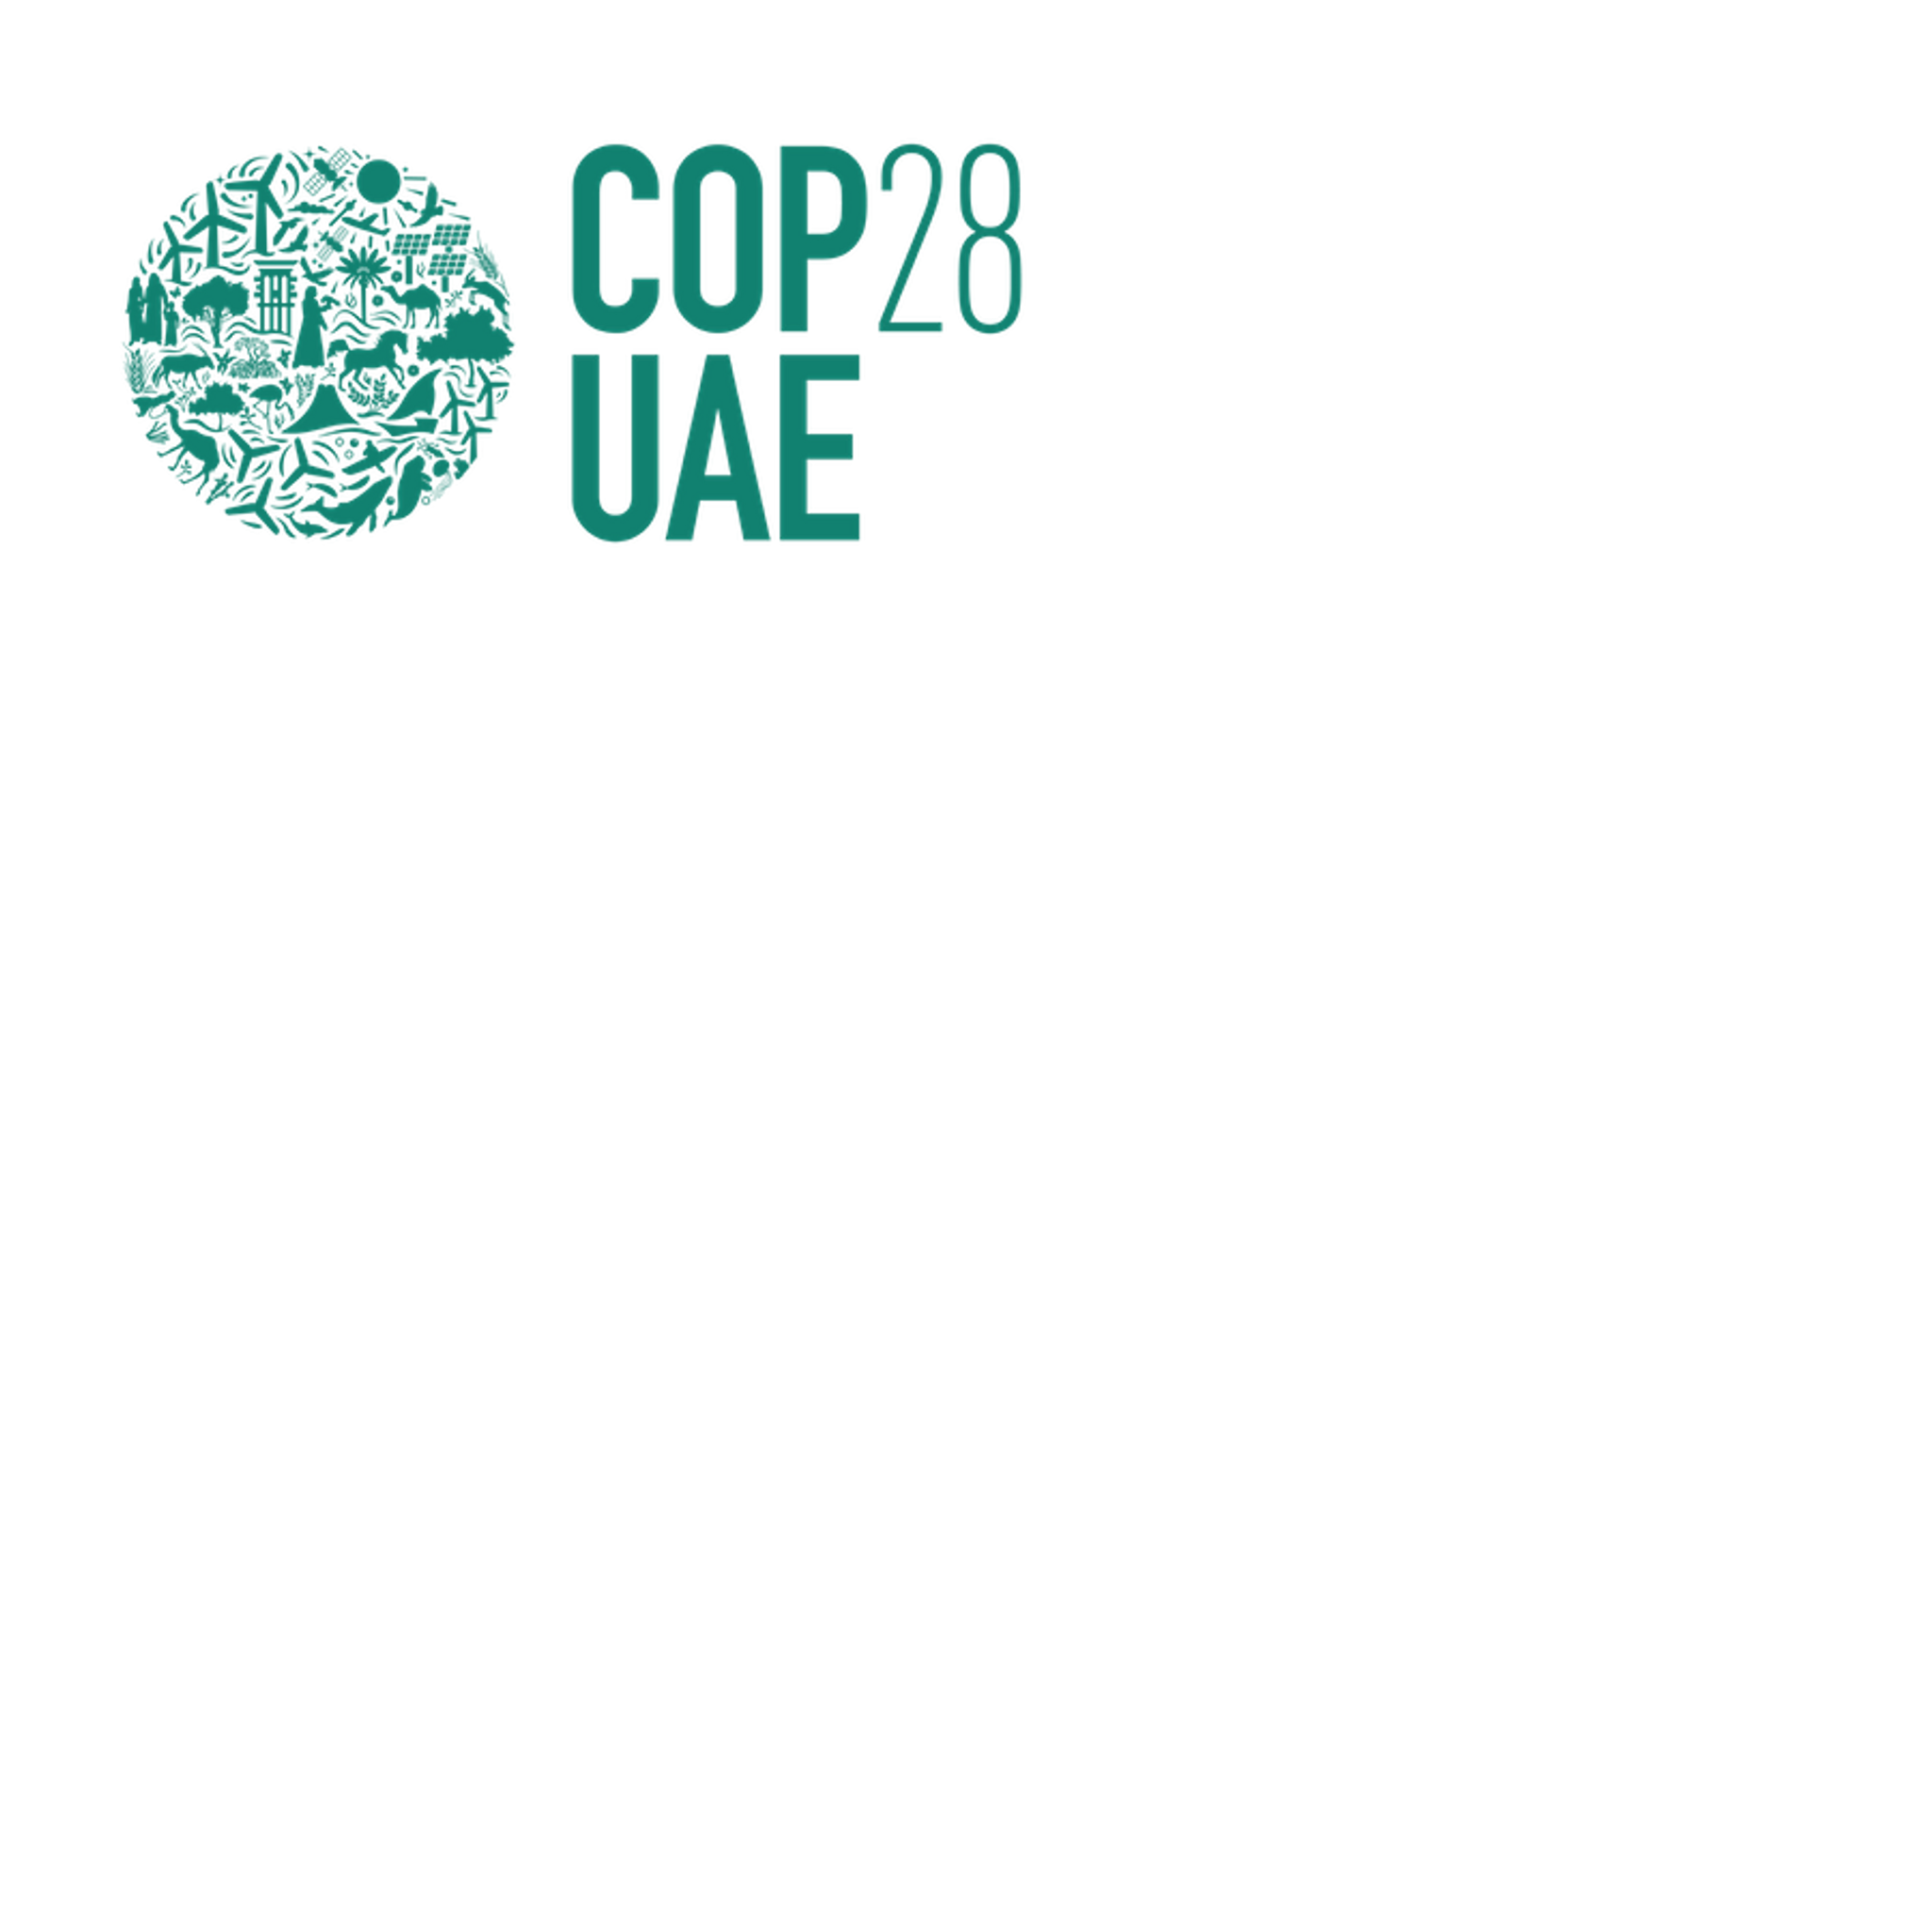 COP28 UAE logo